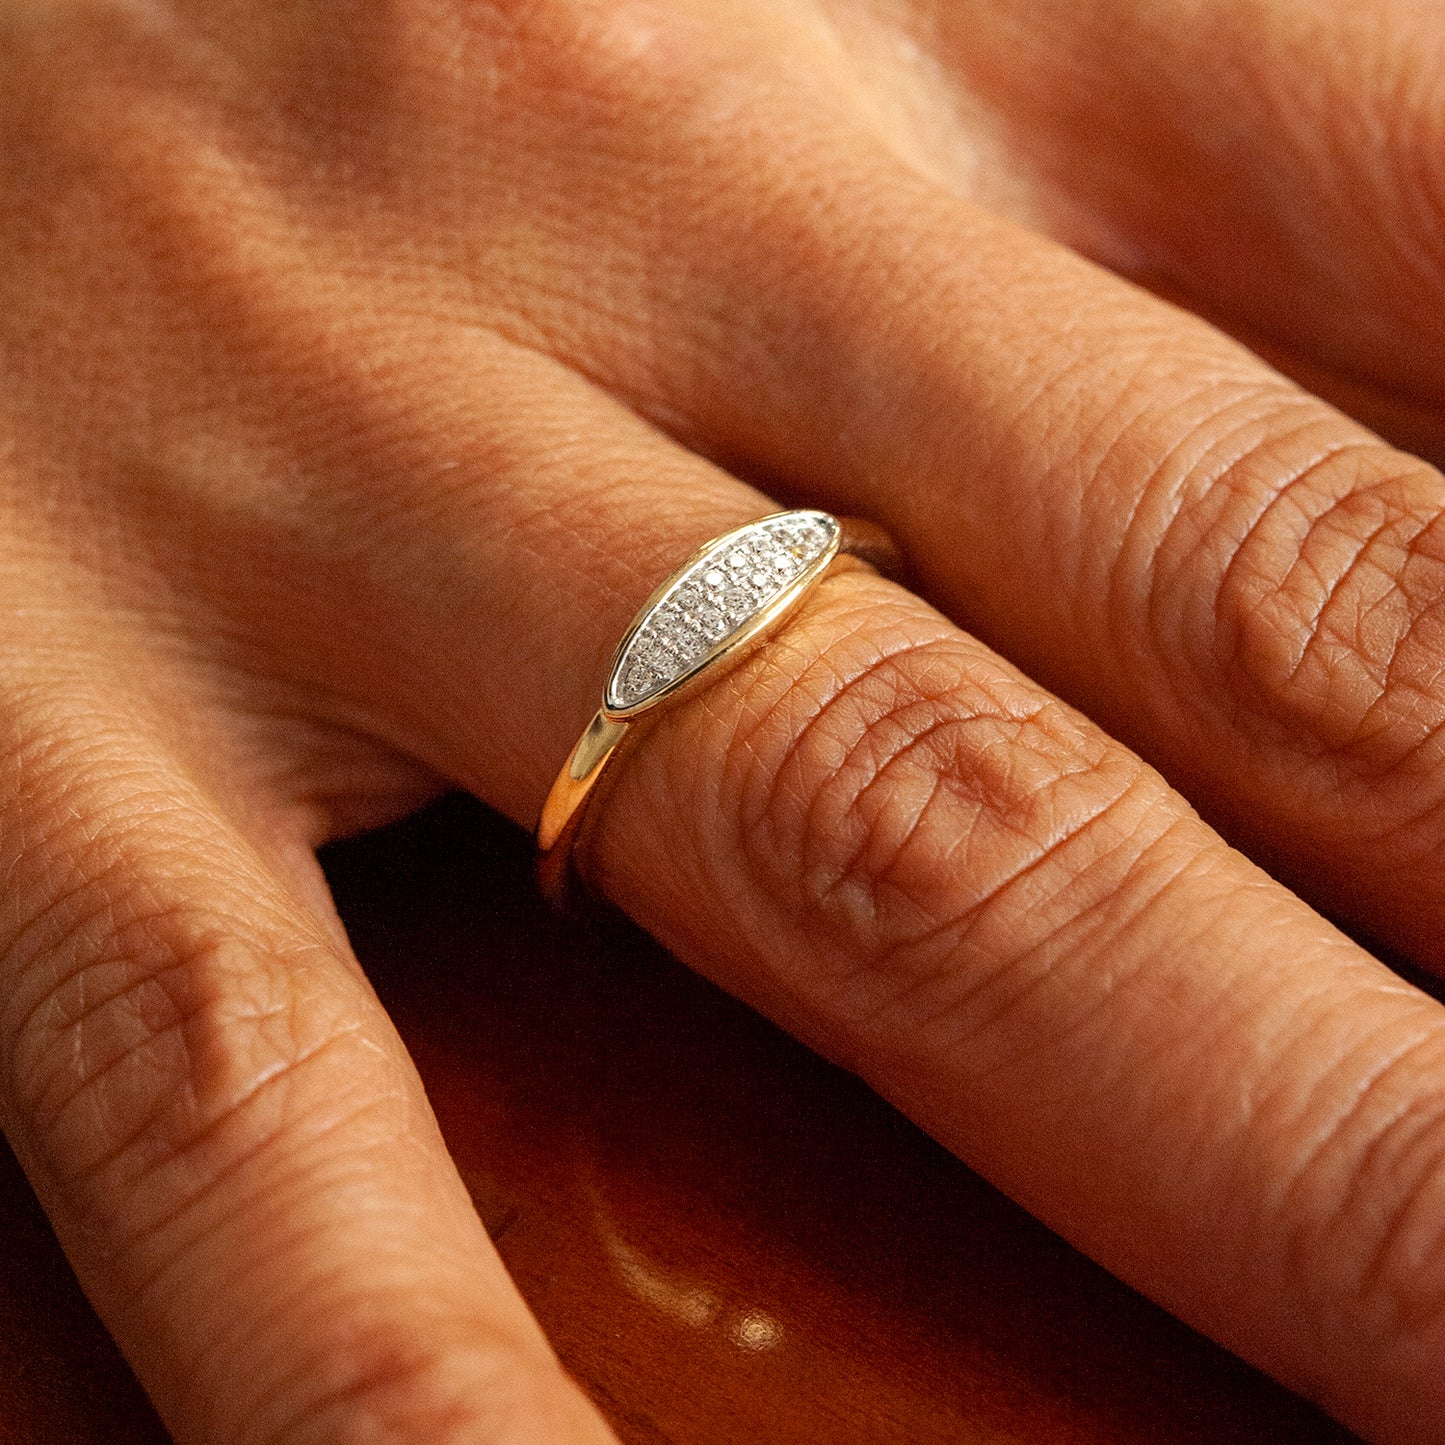 Ren Diamond Ring for Hand